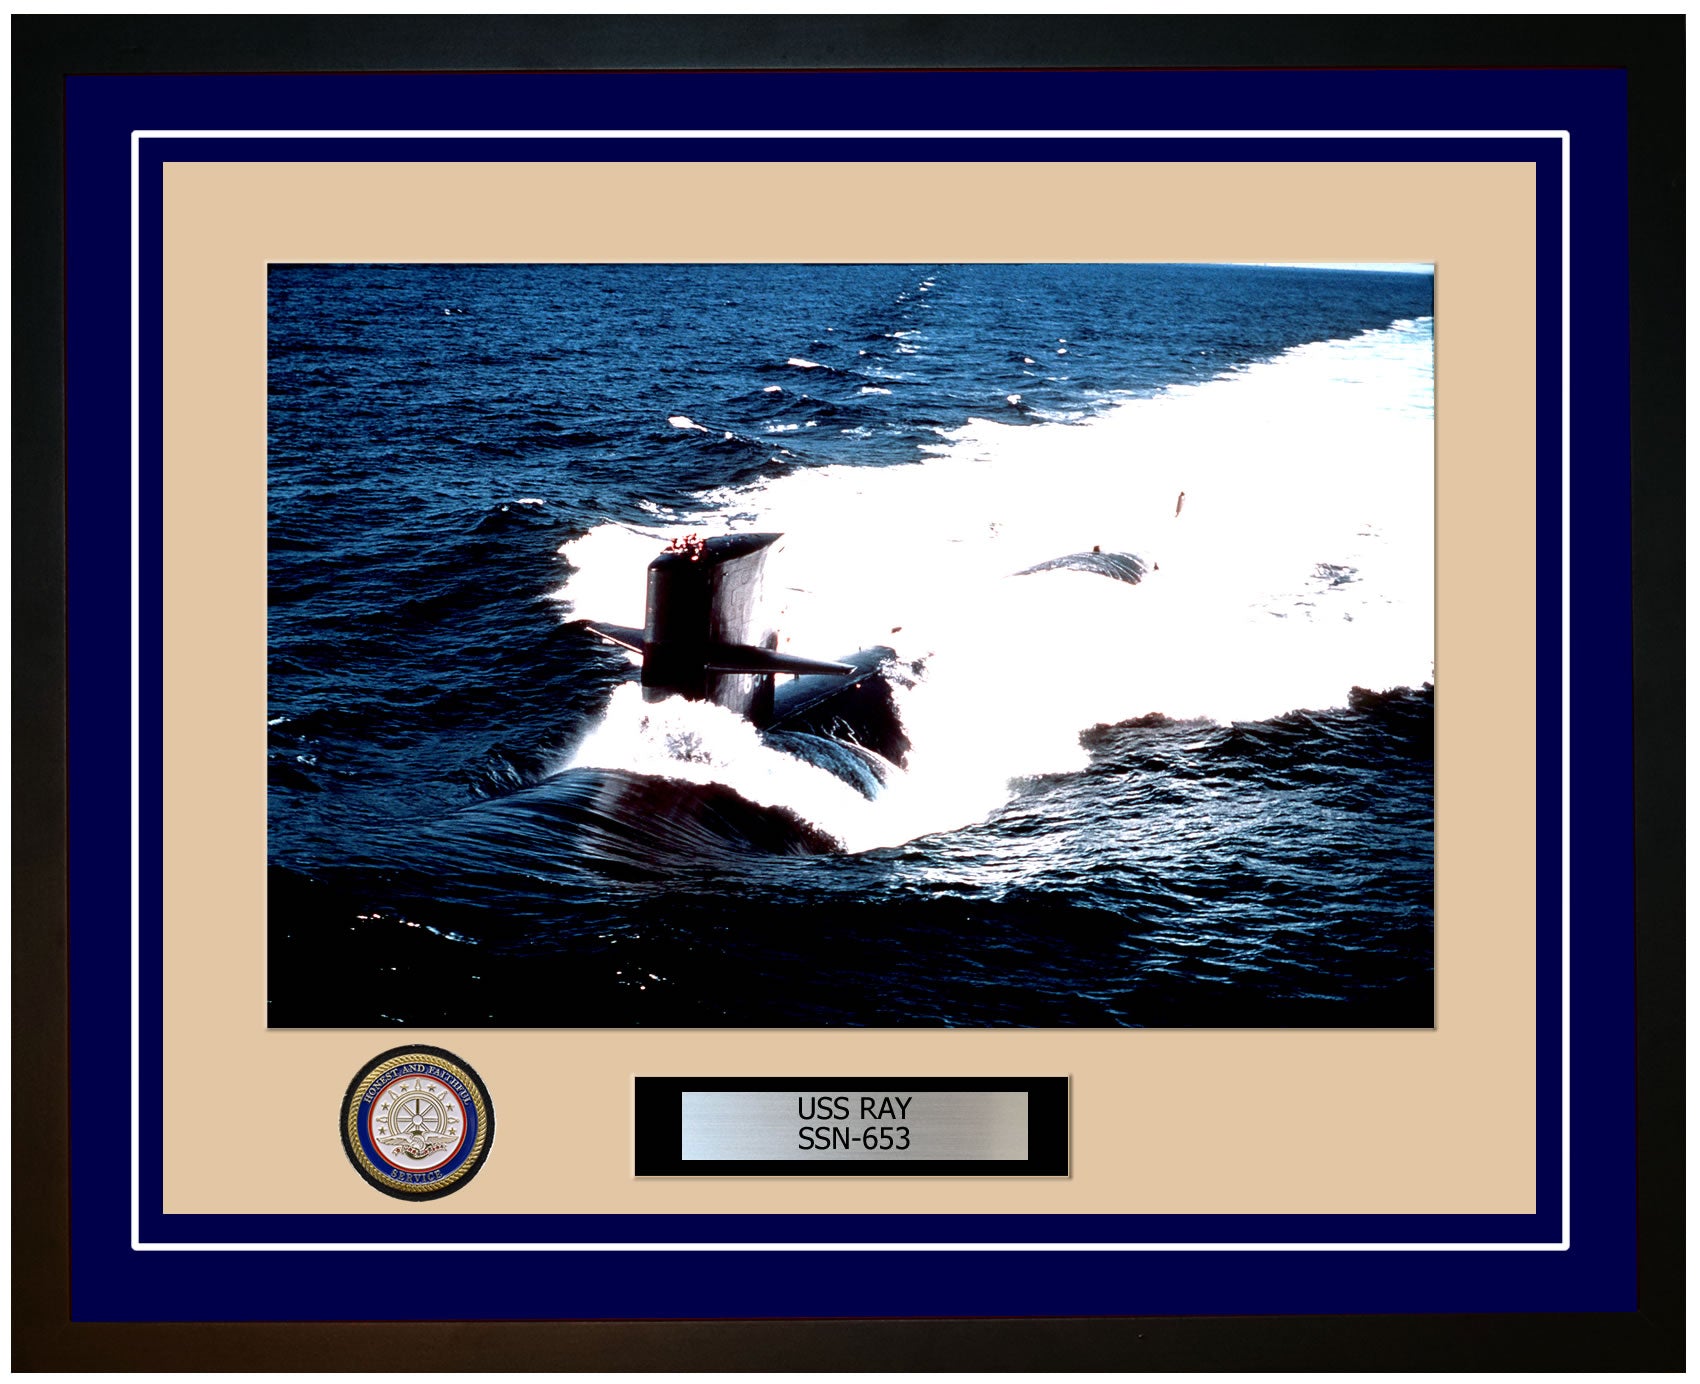 USS Ray SSN-653 Framed Navy Ship Photo Blue